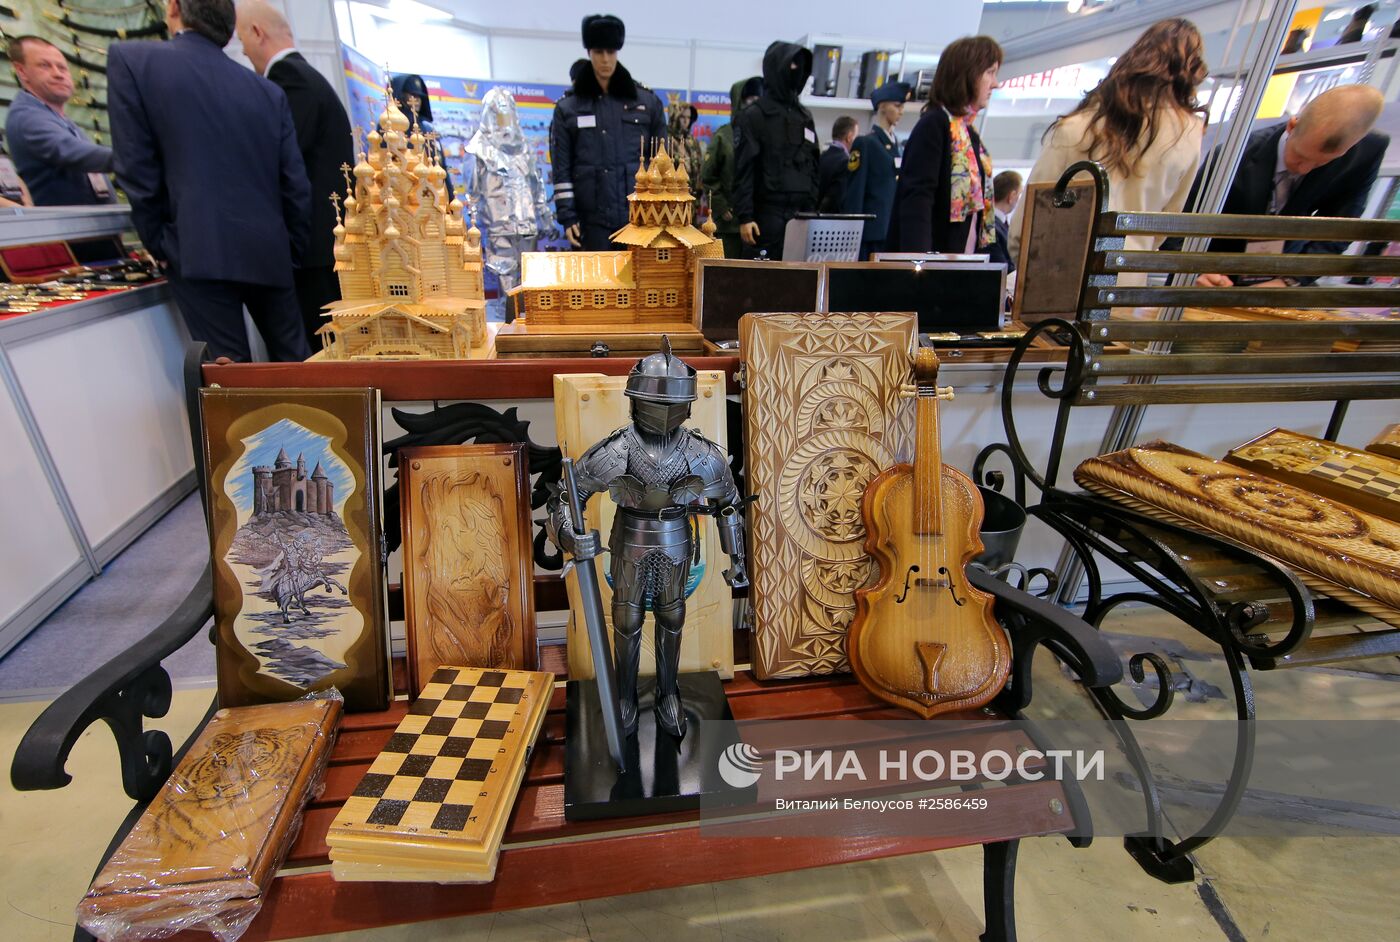 XI Всероссийский форум-выставка "Госзаказ – 2015"